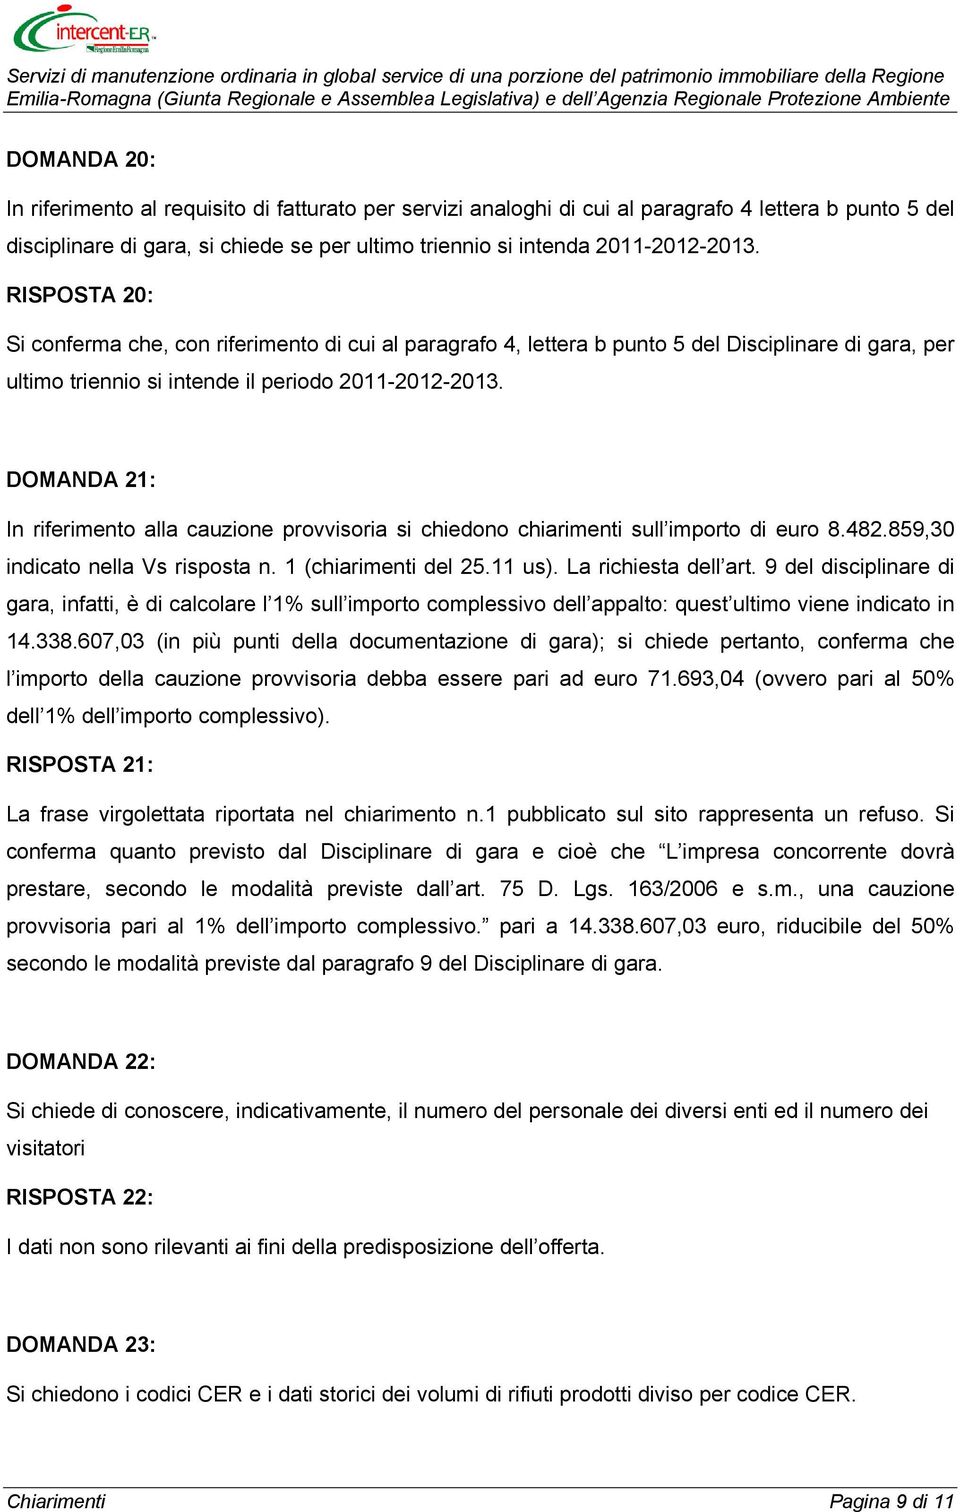 DOMANDA 21: In riferimento alla cauzione provvisoria si chiedono chiarimenti sull importo di euro 8.482.859,30 indicato nella Vs risposta n. 1 (chiarimenti del 25.11 us). La richiesta dell art.